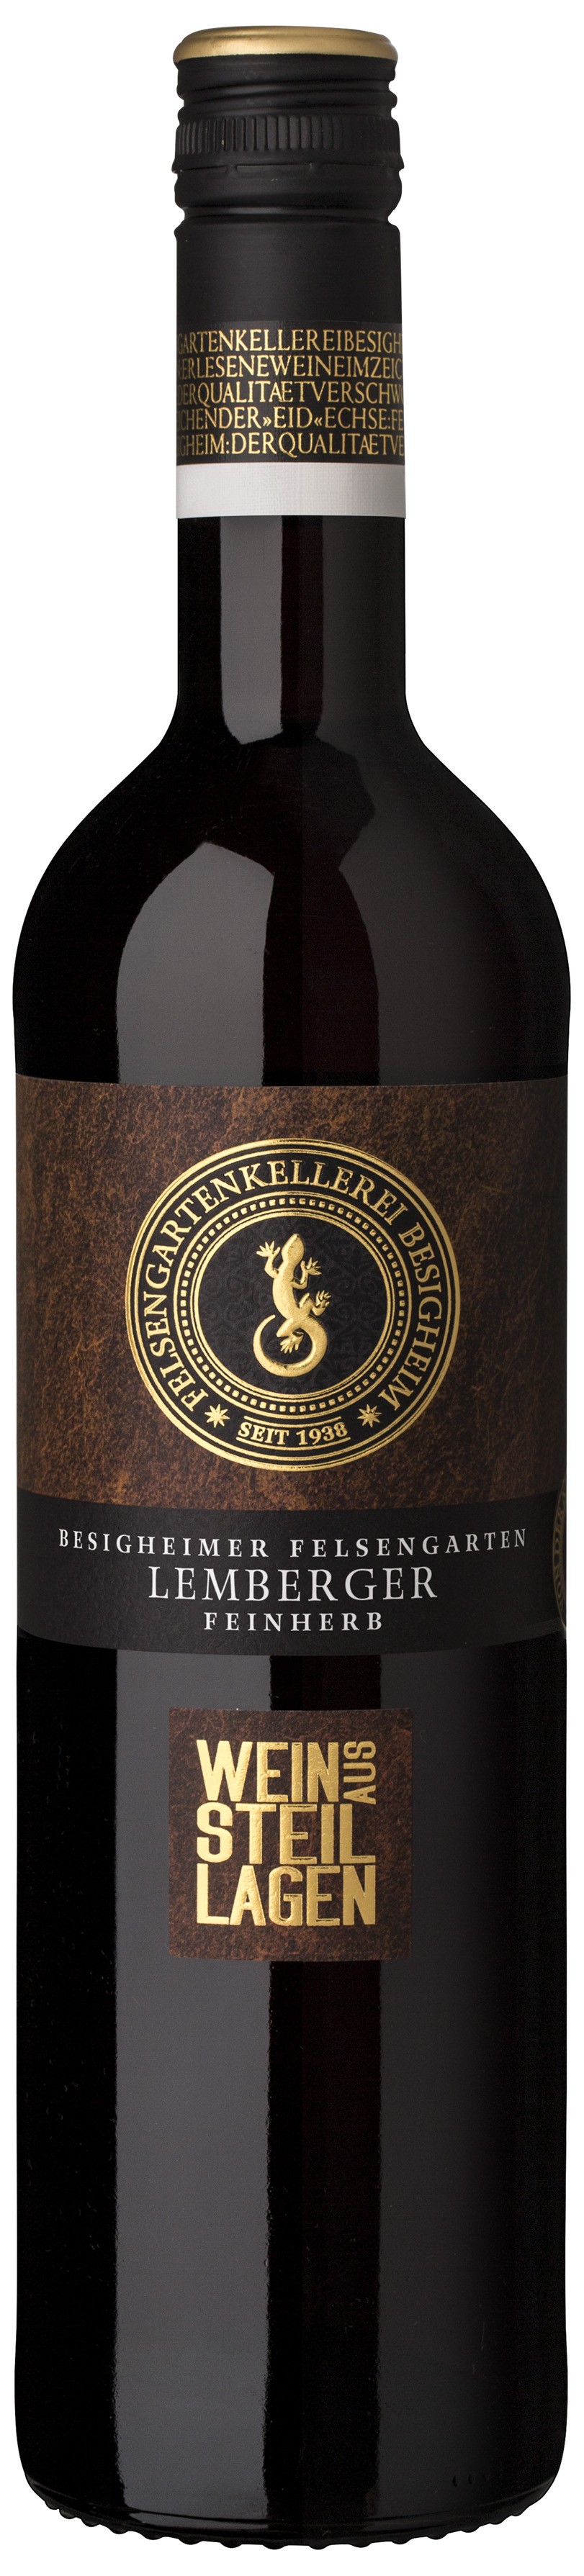 Besigheimer Felsengarten  Steillagen  Lemberger Qualitätswein - feinherb -